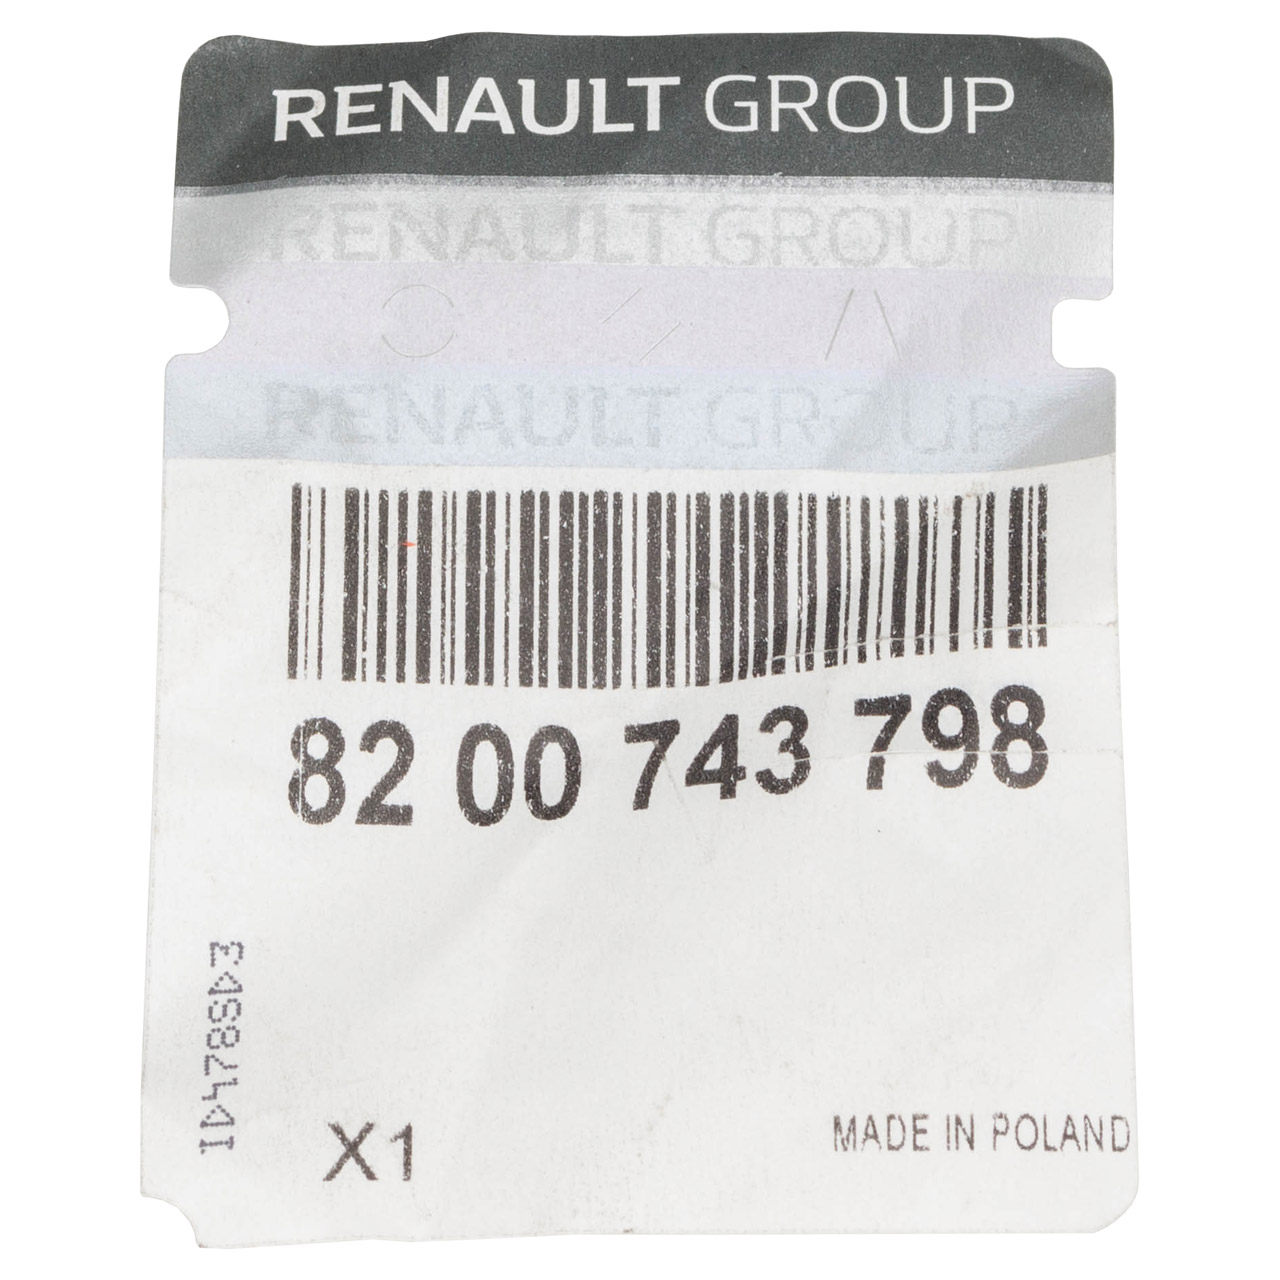 ORIGINAL Renault Gurtschloss Sicherheitsgurt Kangoo KC0/1 hinten 8200743798